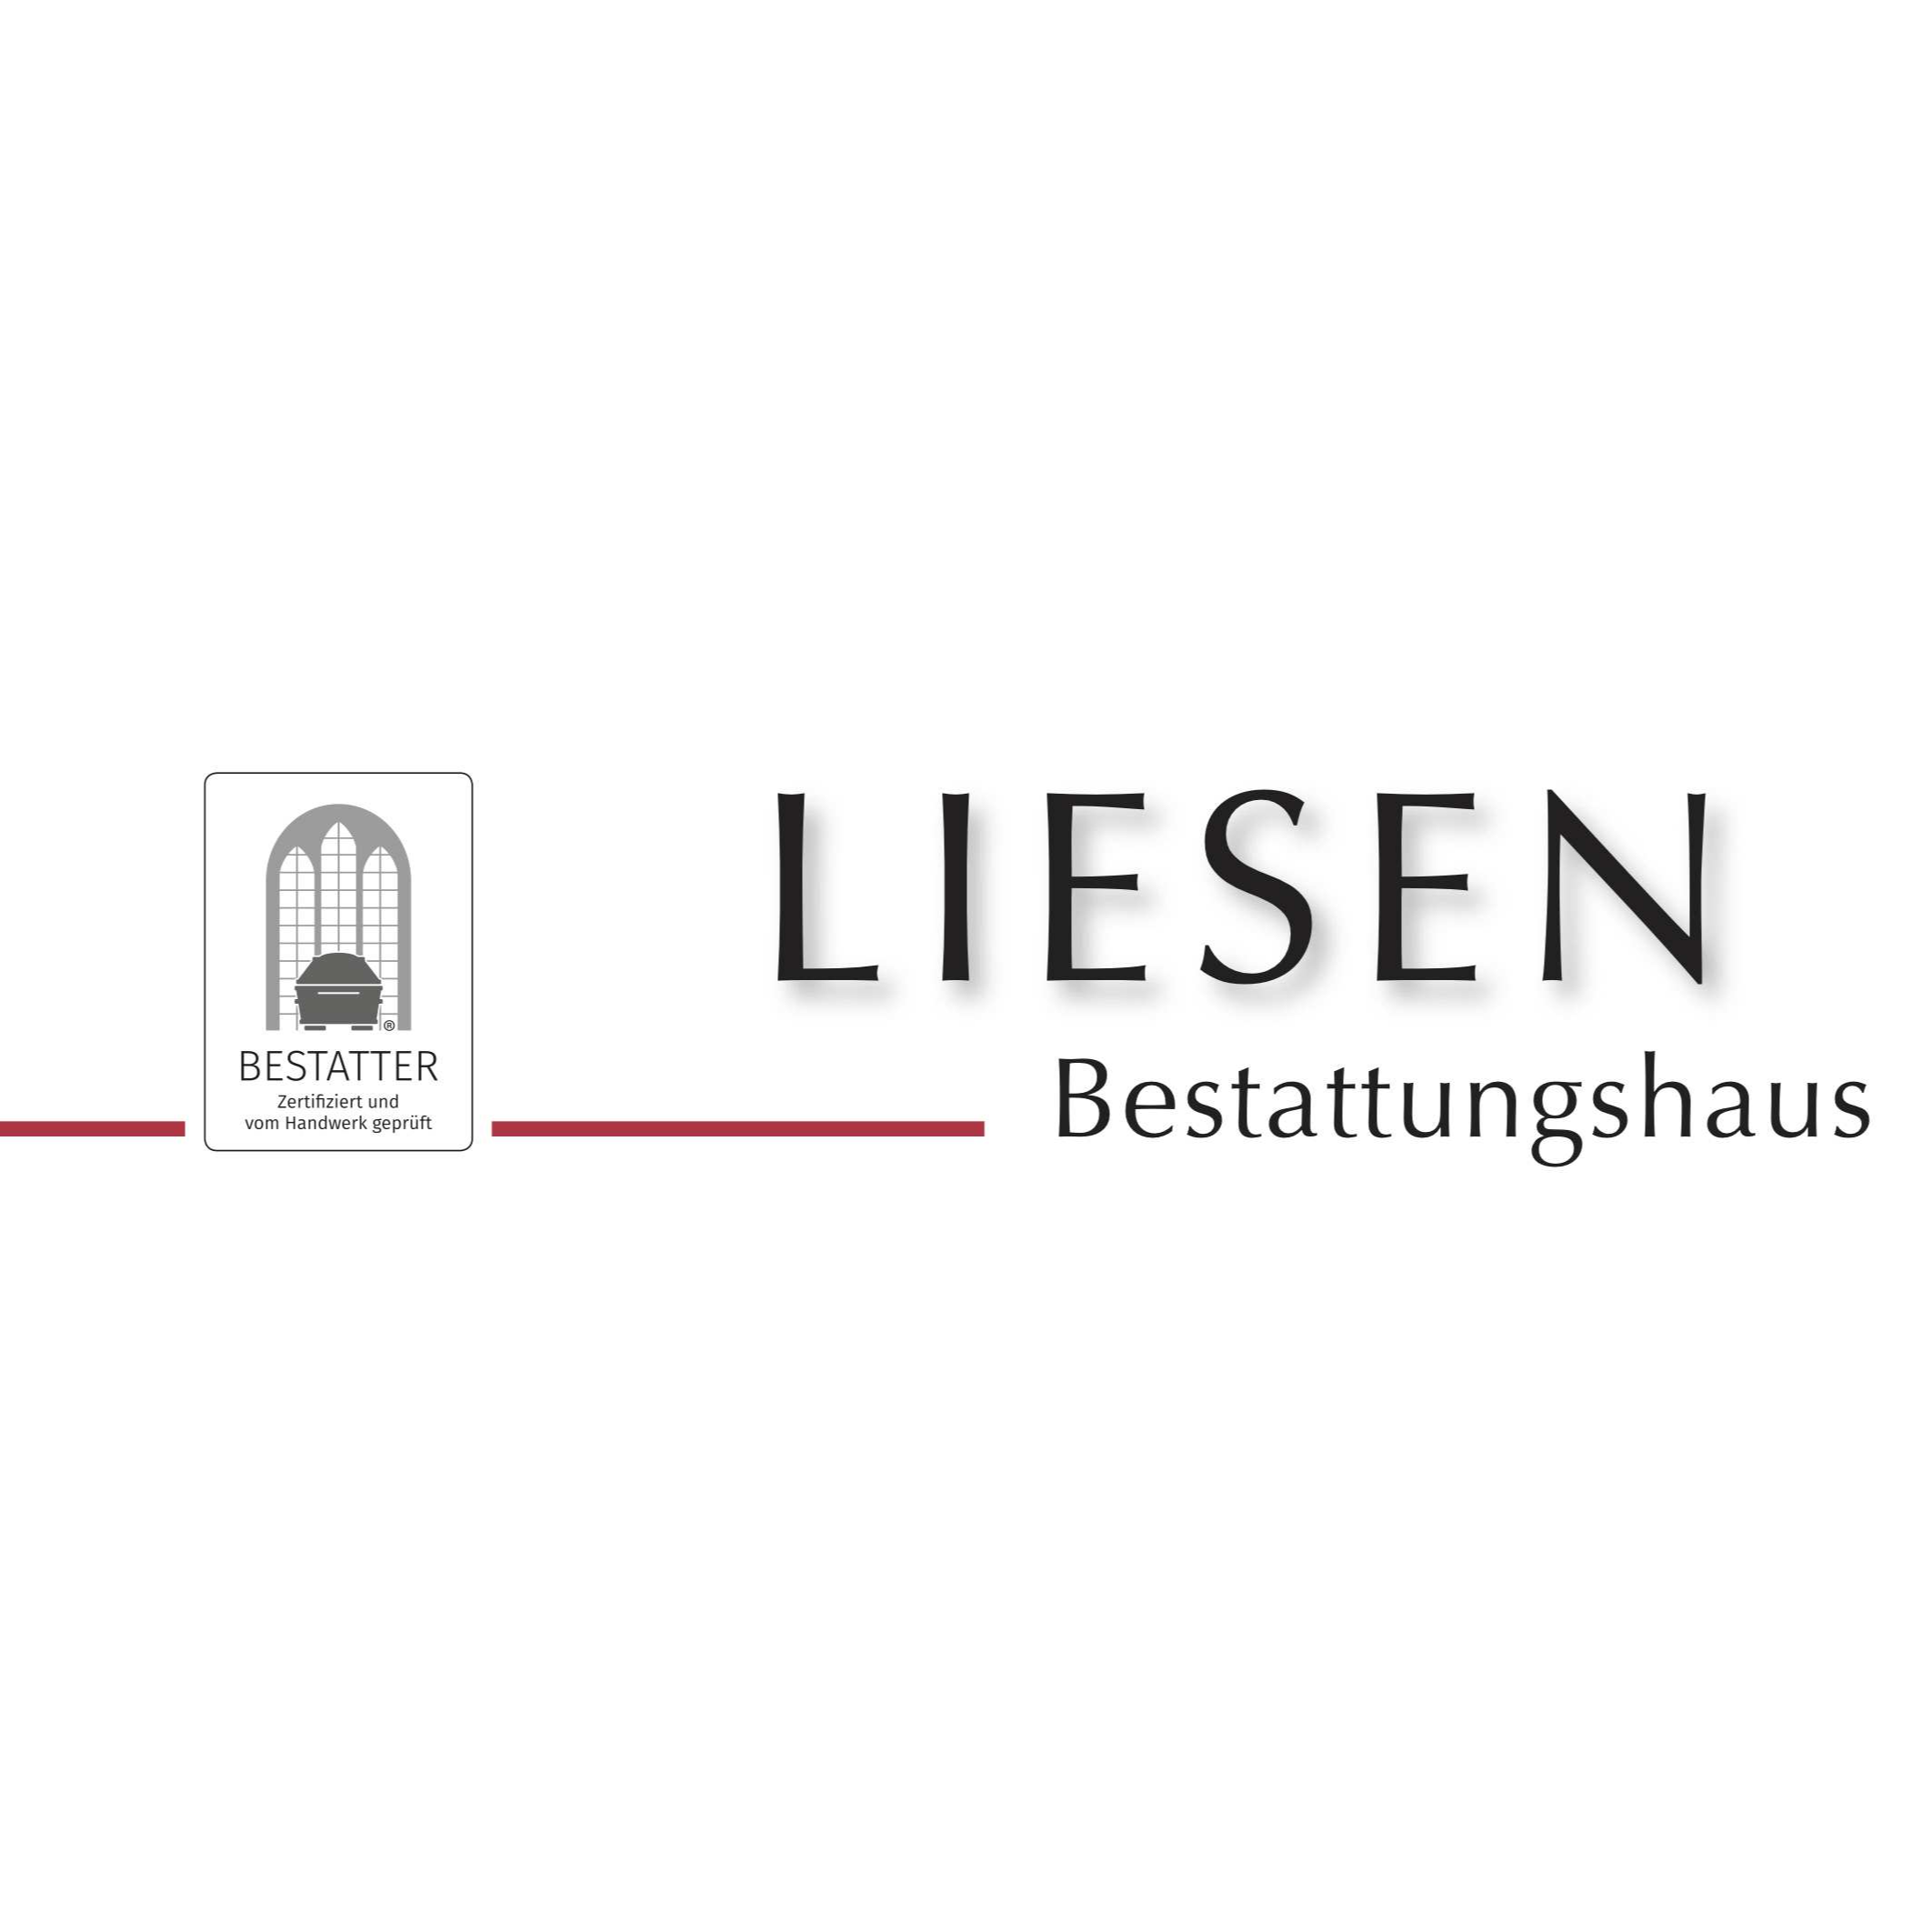 Liesen GmbH Bestattungshaus - Schreinerei in Oberhausen